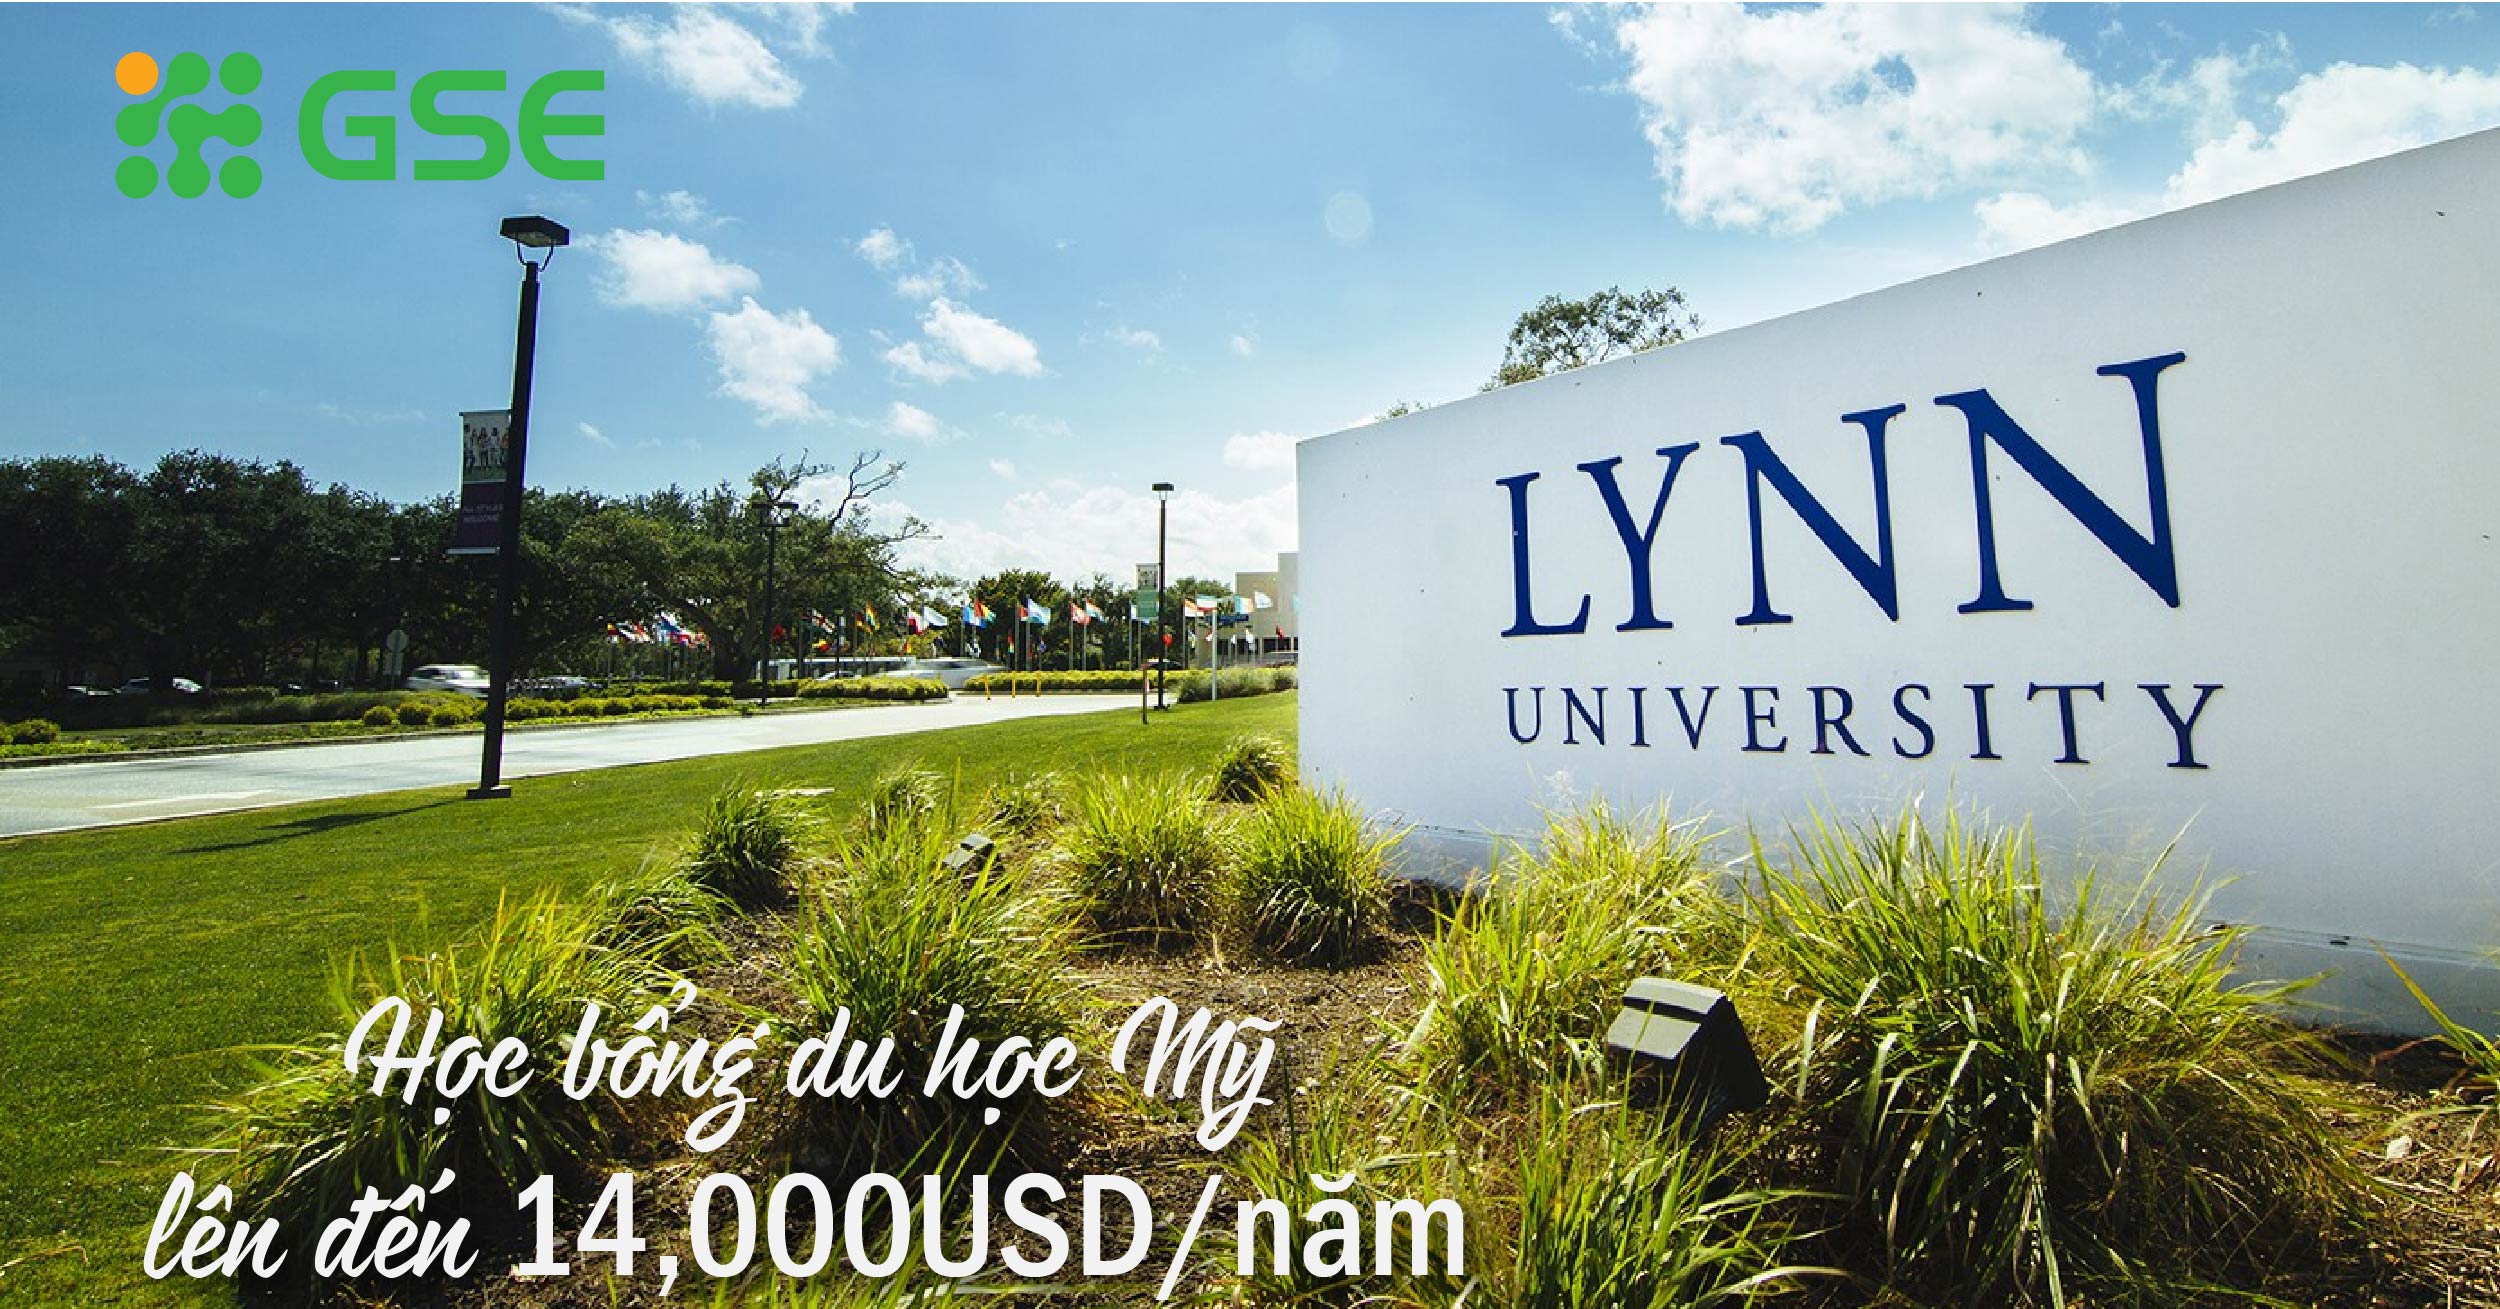 Du học Mỹ với Học bổng lên đến 14,000USD/năm từ Lynn University